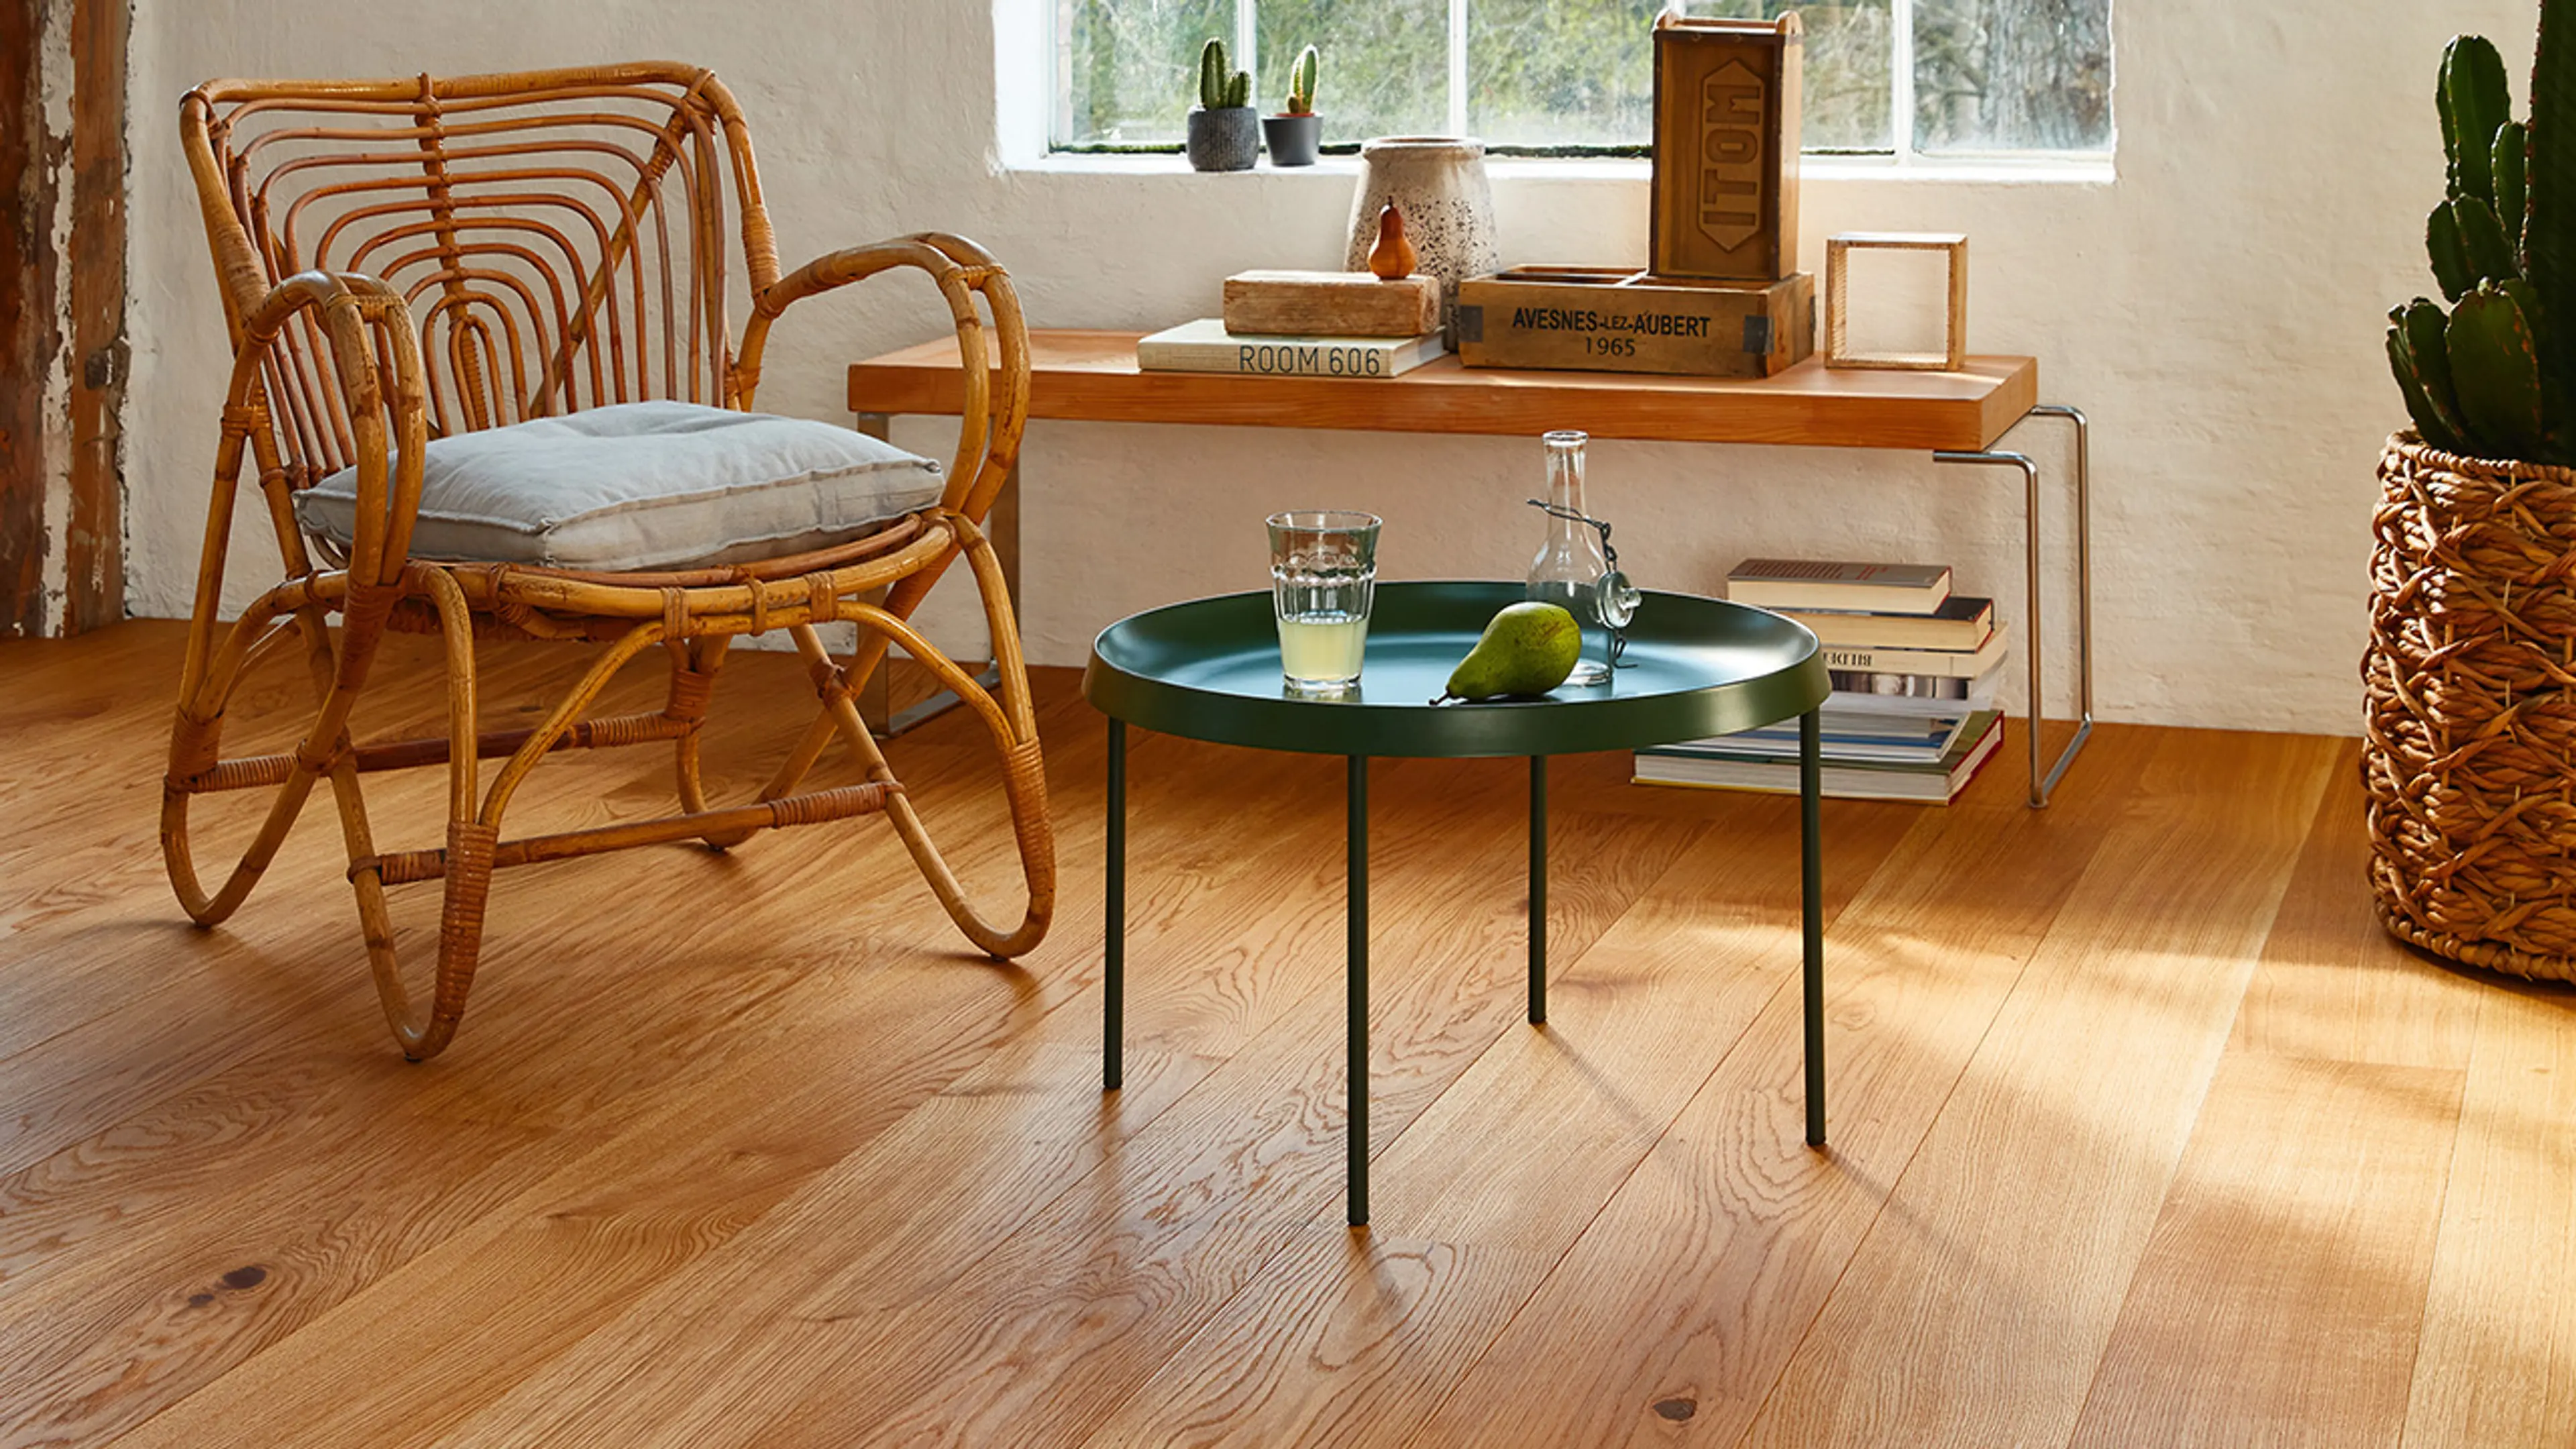 Parkett Eik Animoso fra Boen i stue med tremøbler og grønt bord.